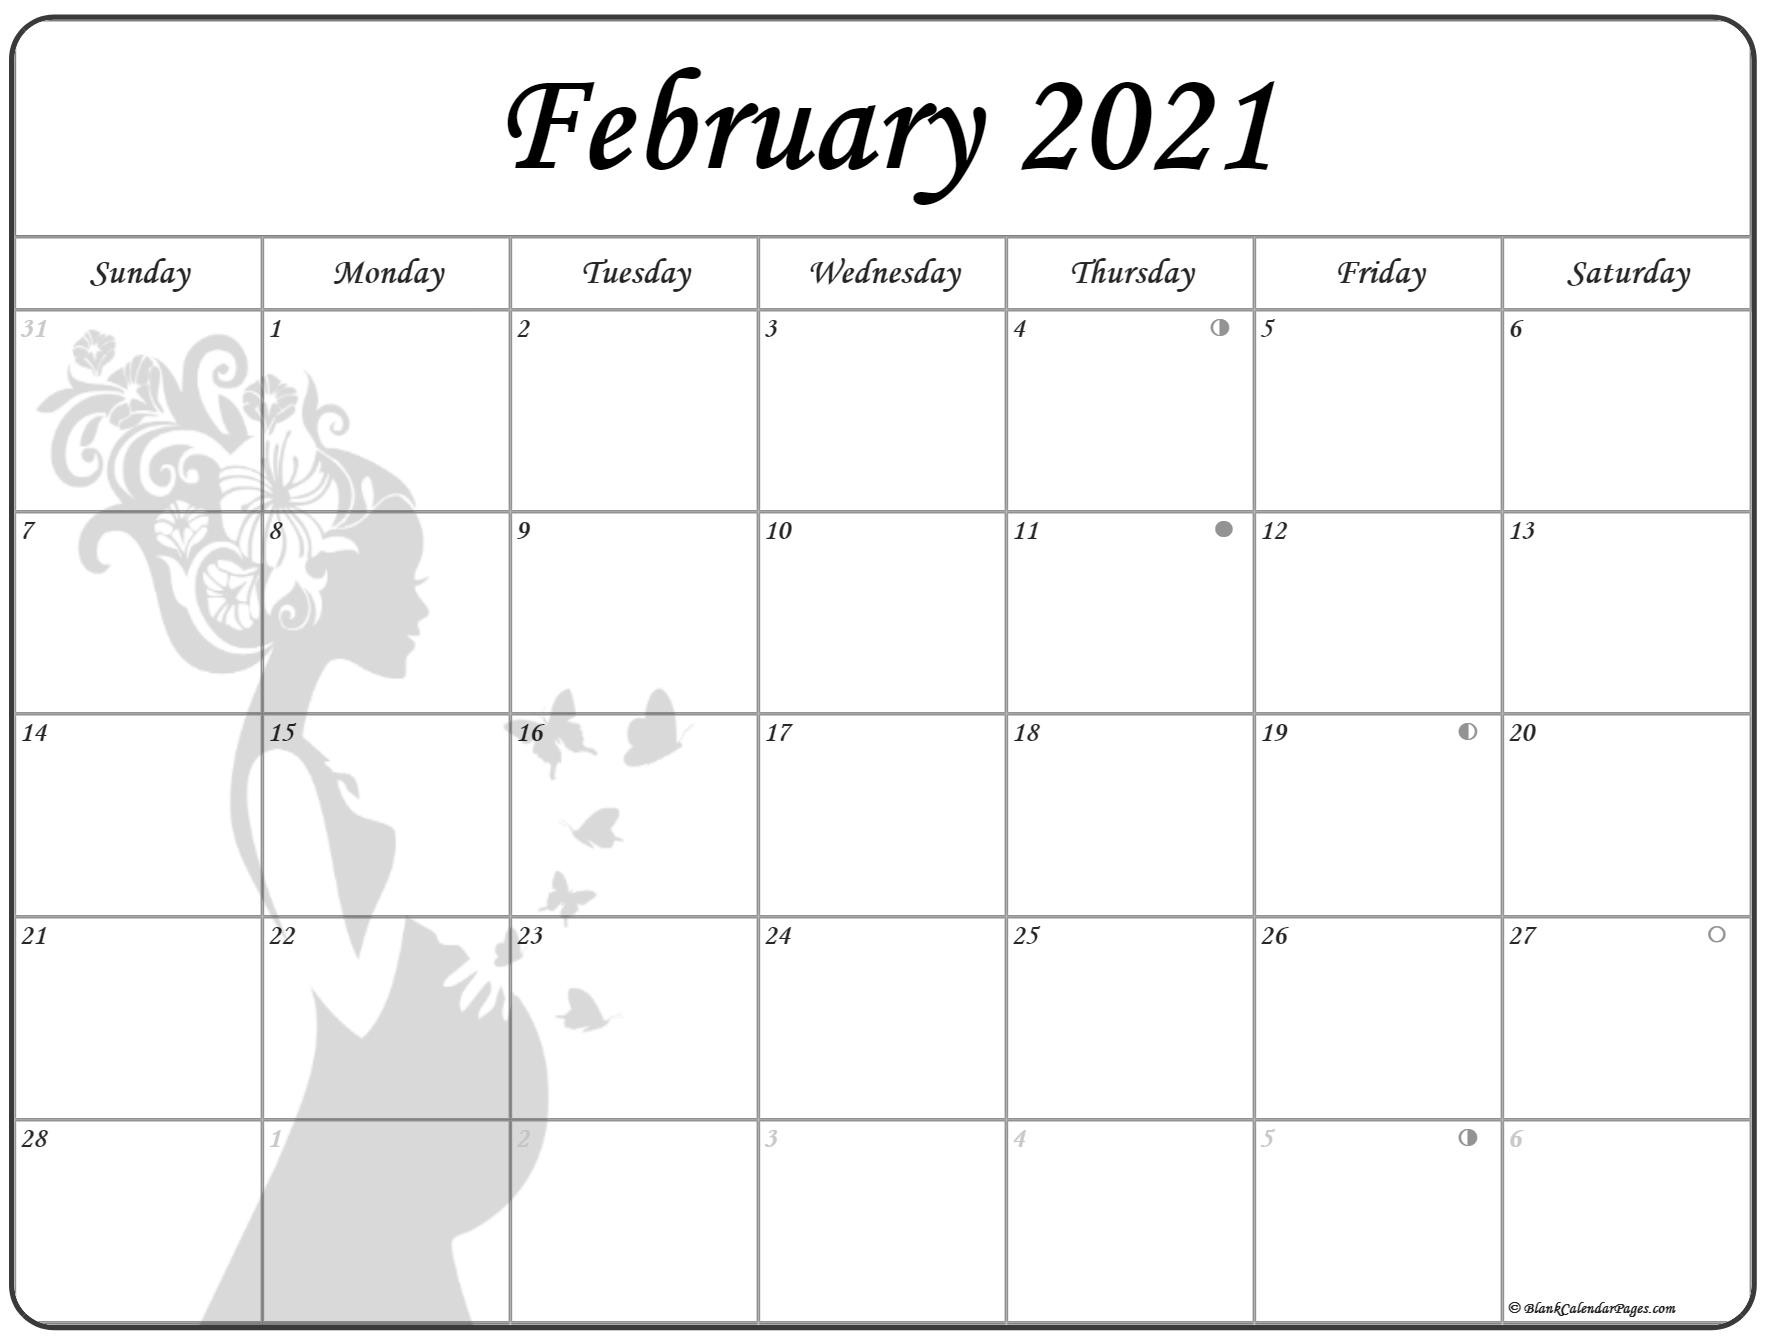 February 2021 Full Moon Phases Calendar - Calendar 2021